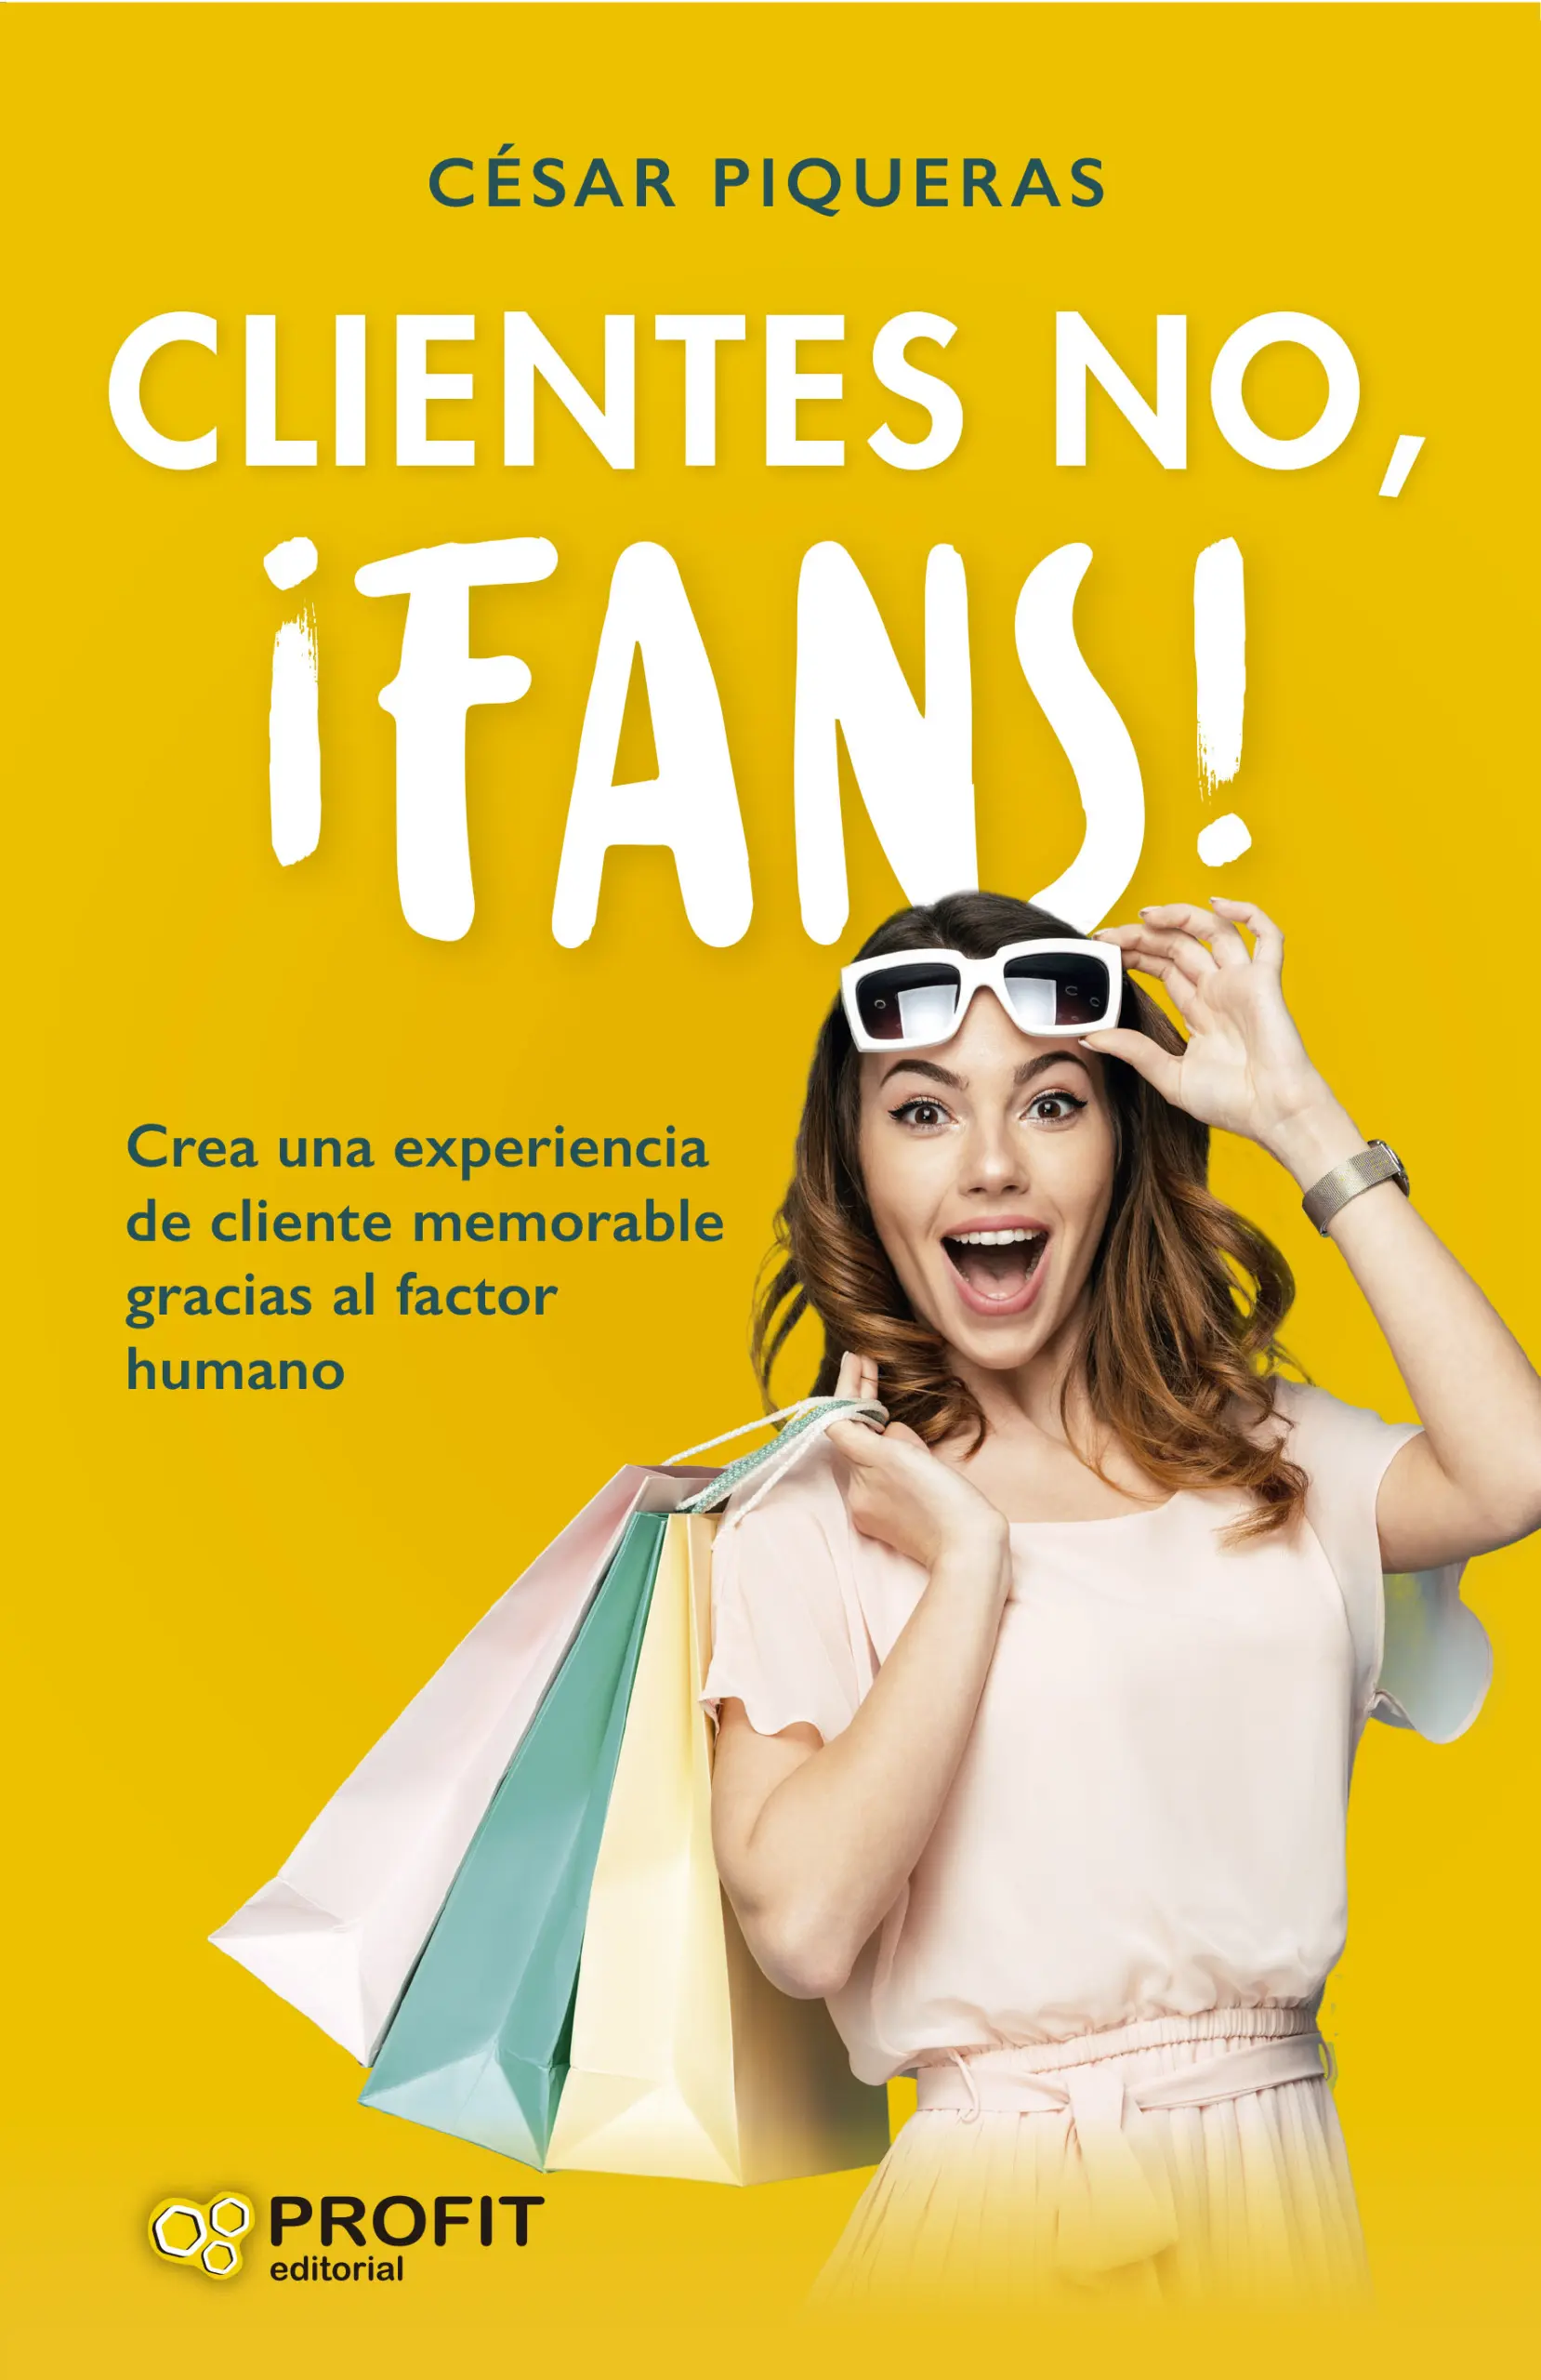 Clientes no, ¡fans! | César Piqueras | Libros para vivir mejor